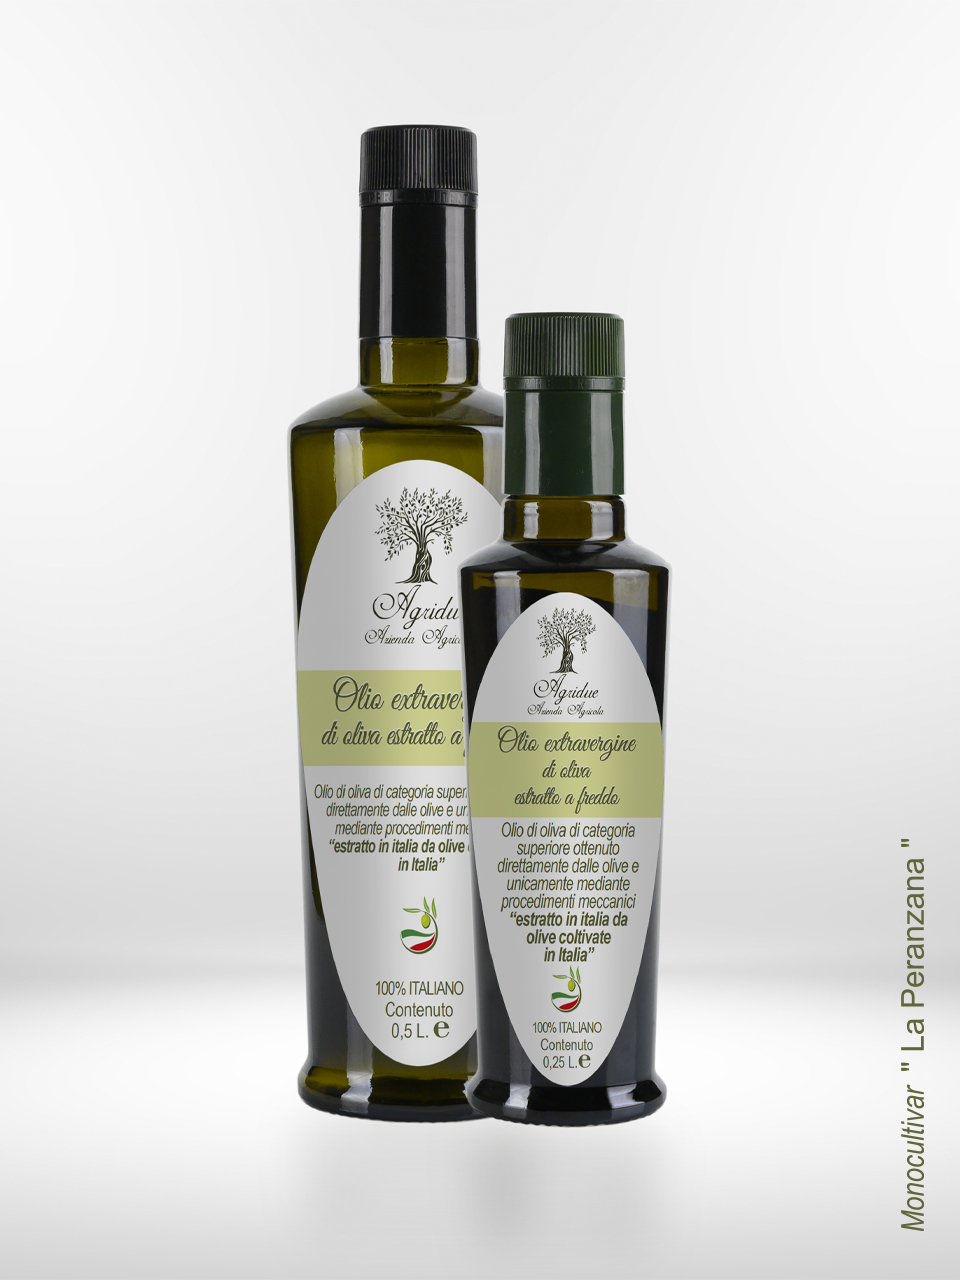 Due bottiglie di olio d'oliva su sfondo bianco. Olio monovarietale della tipologia di pianta